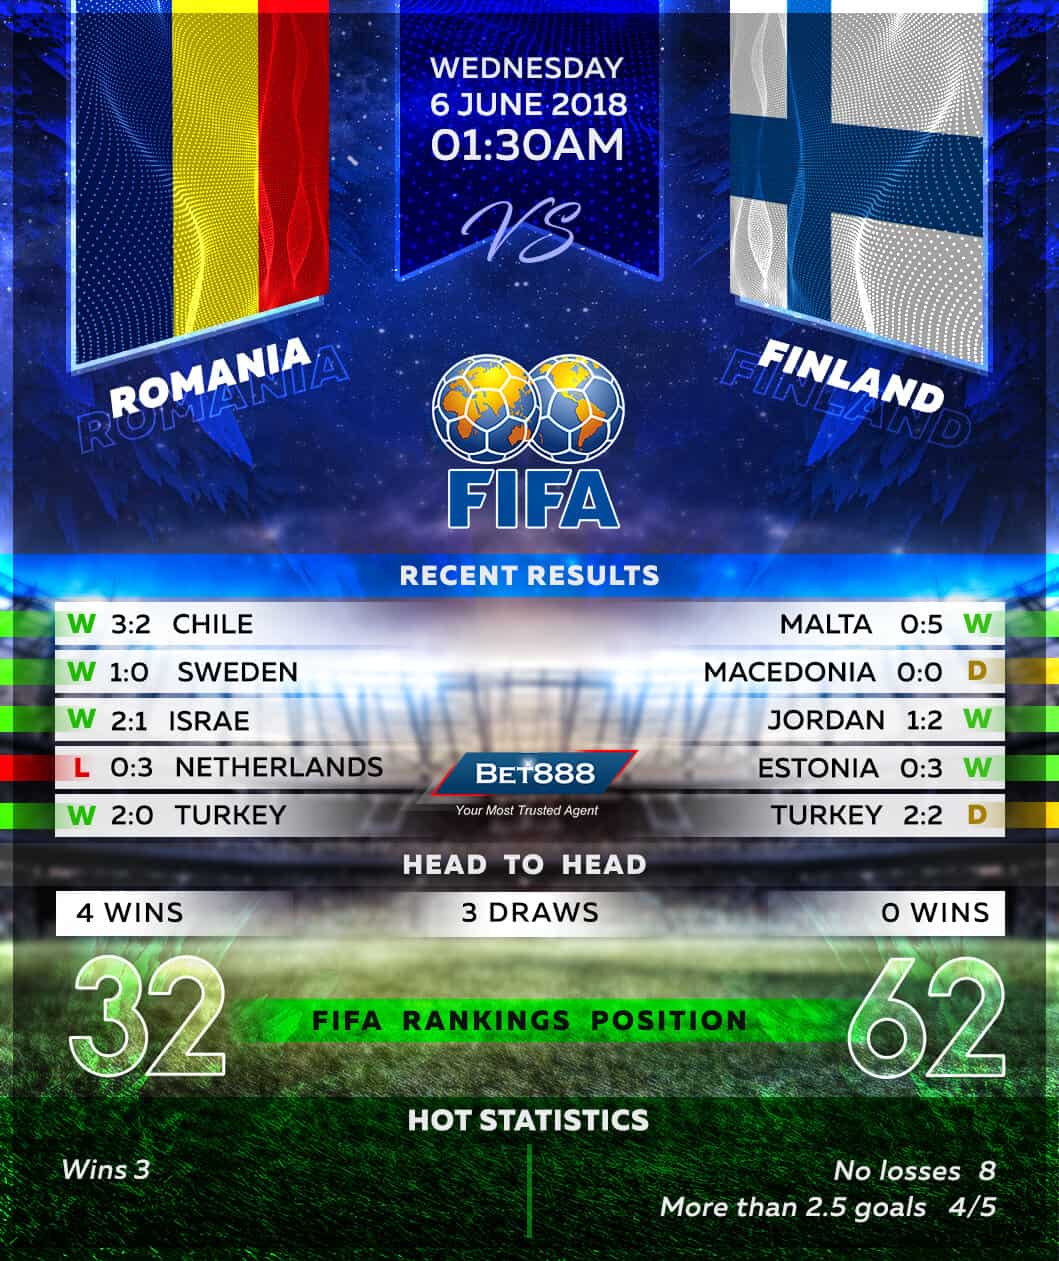 Romania vs Finland 06/06/18